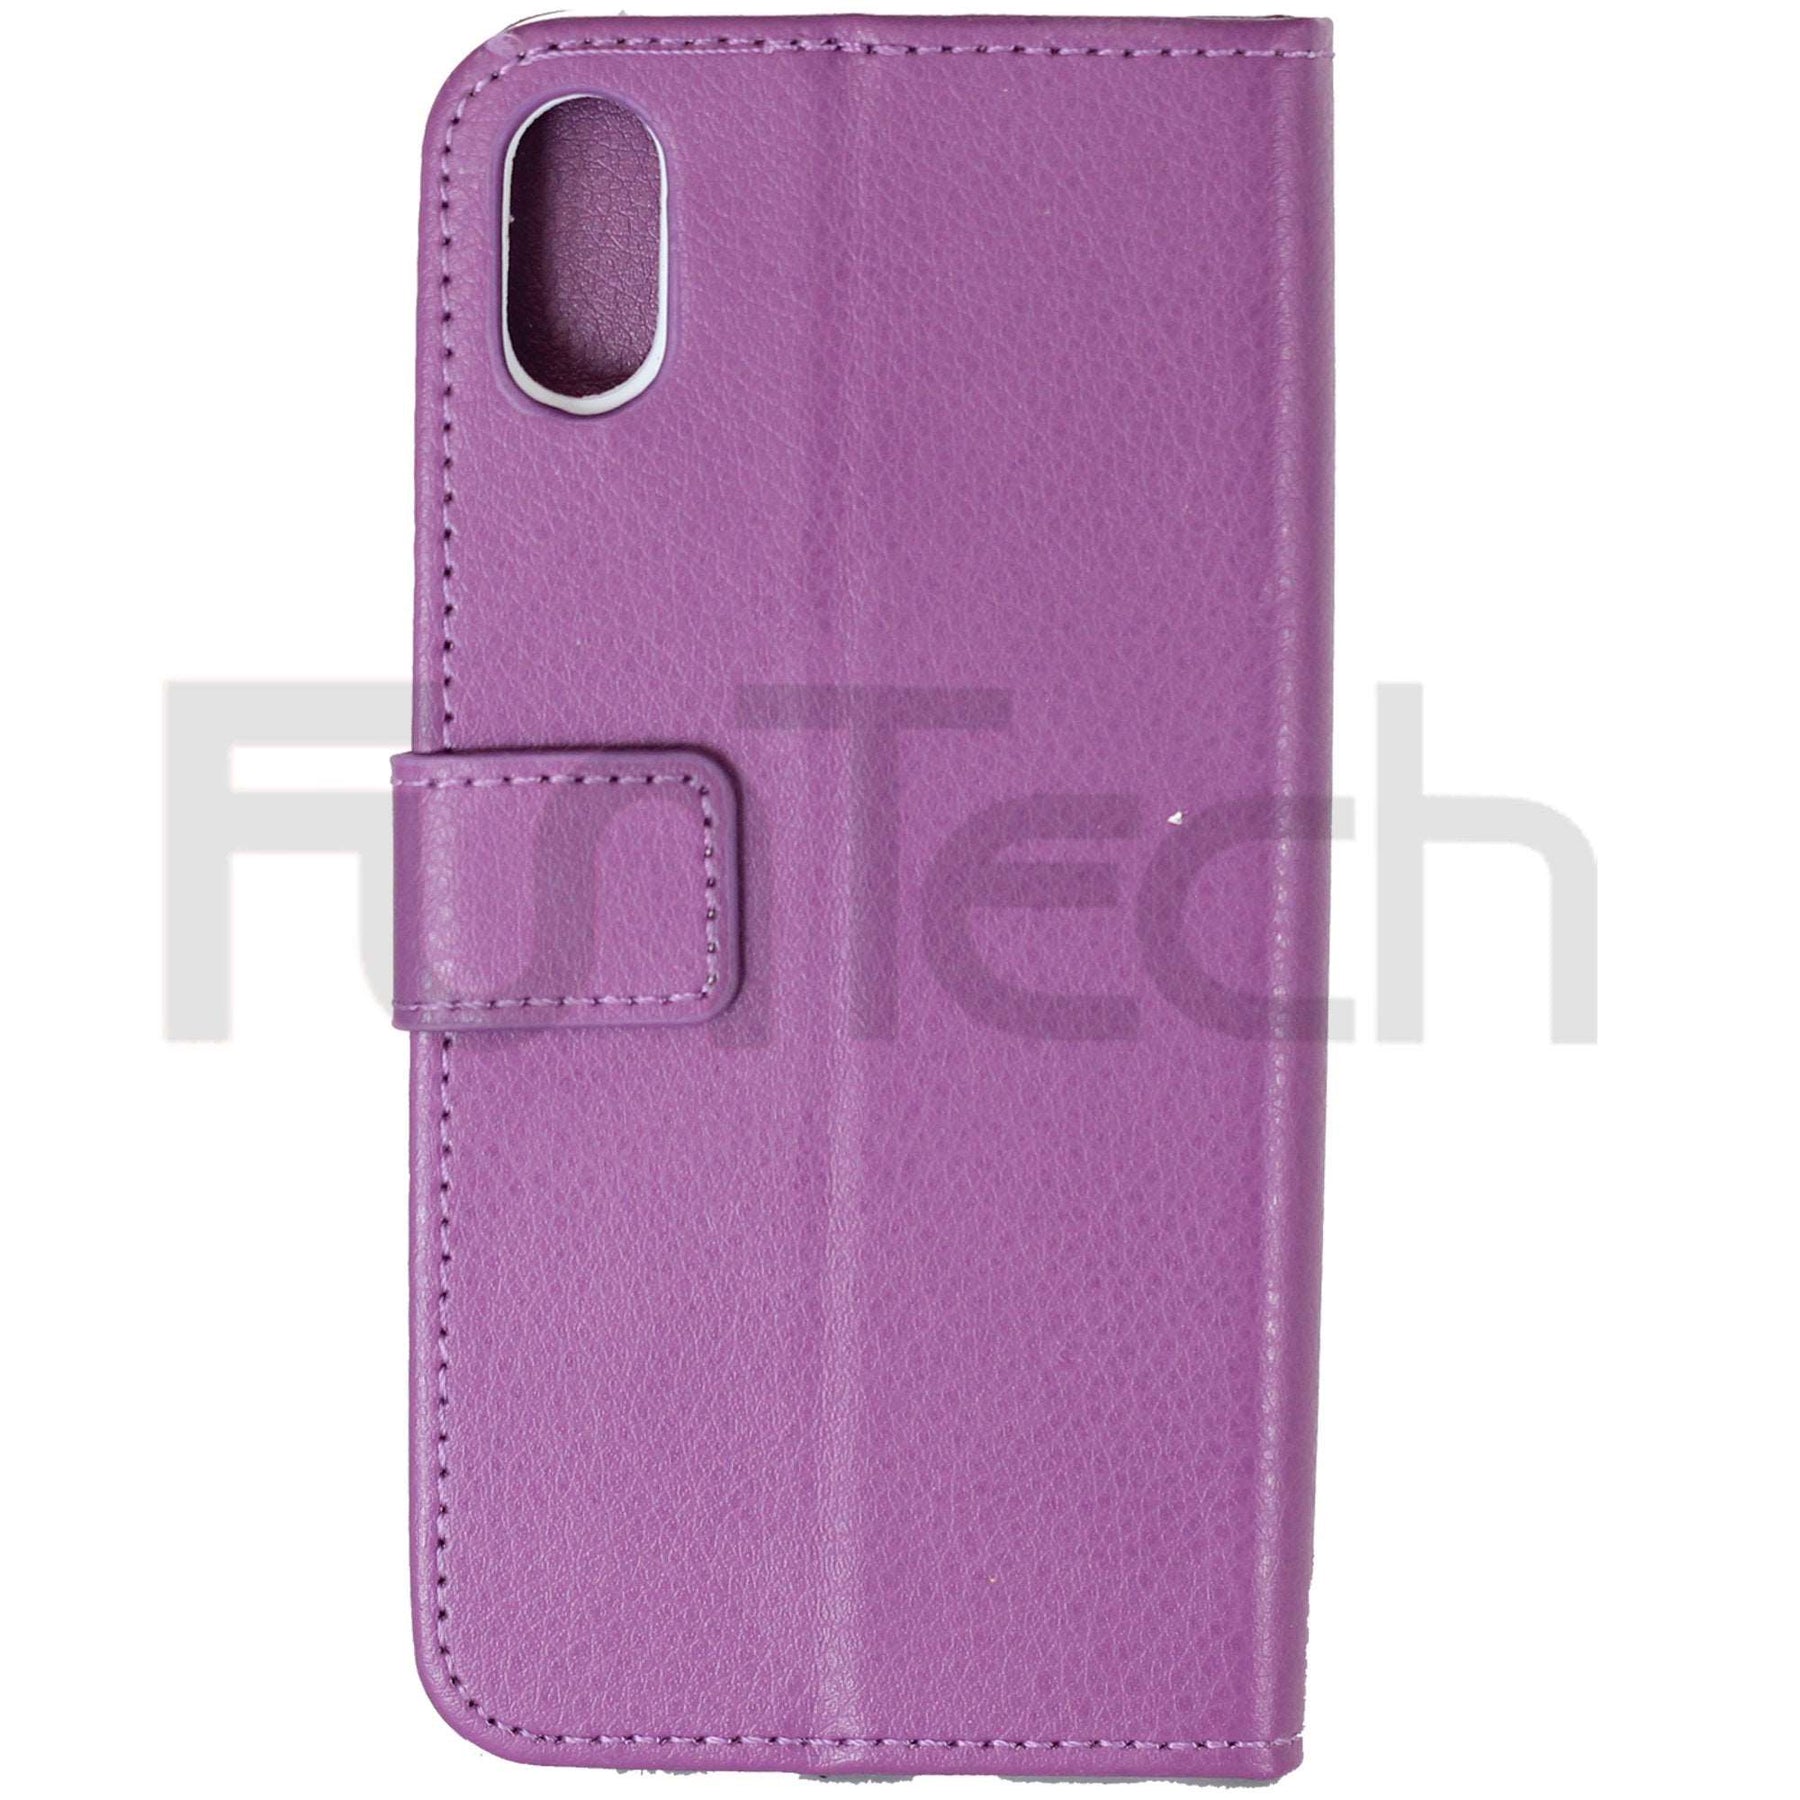 Apple iPhone X Leather Case Purple